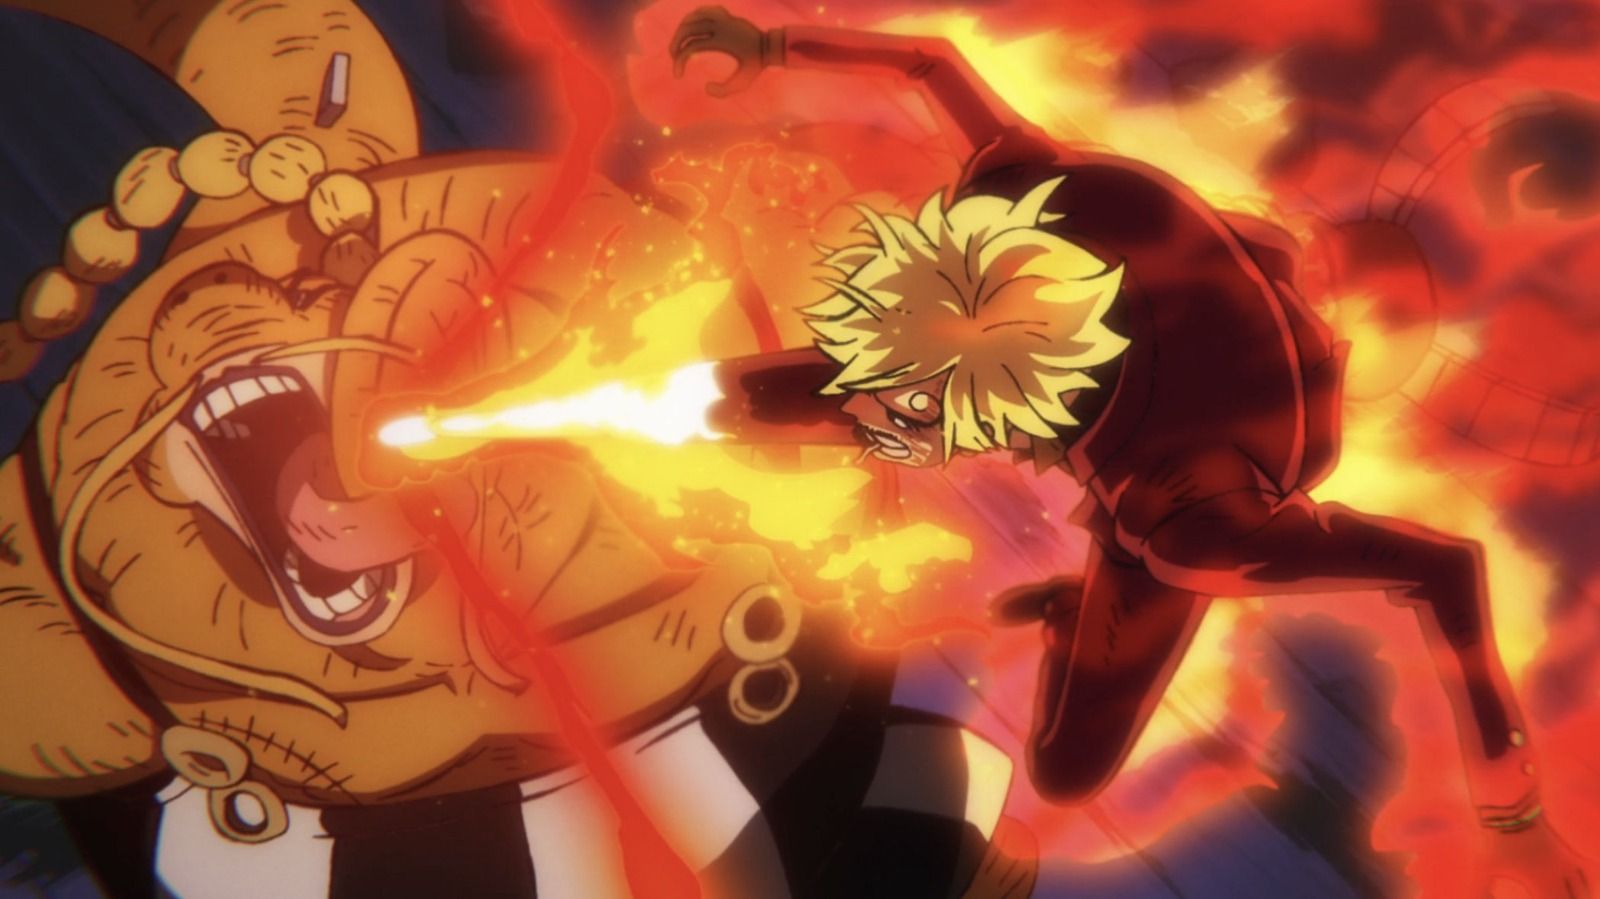 Nonton Anime One Piece Episode 1061 Sub Indo Bukan di Anoboy.